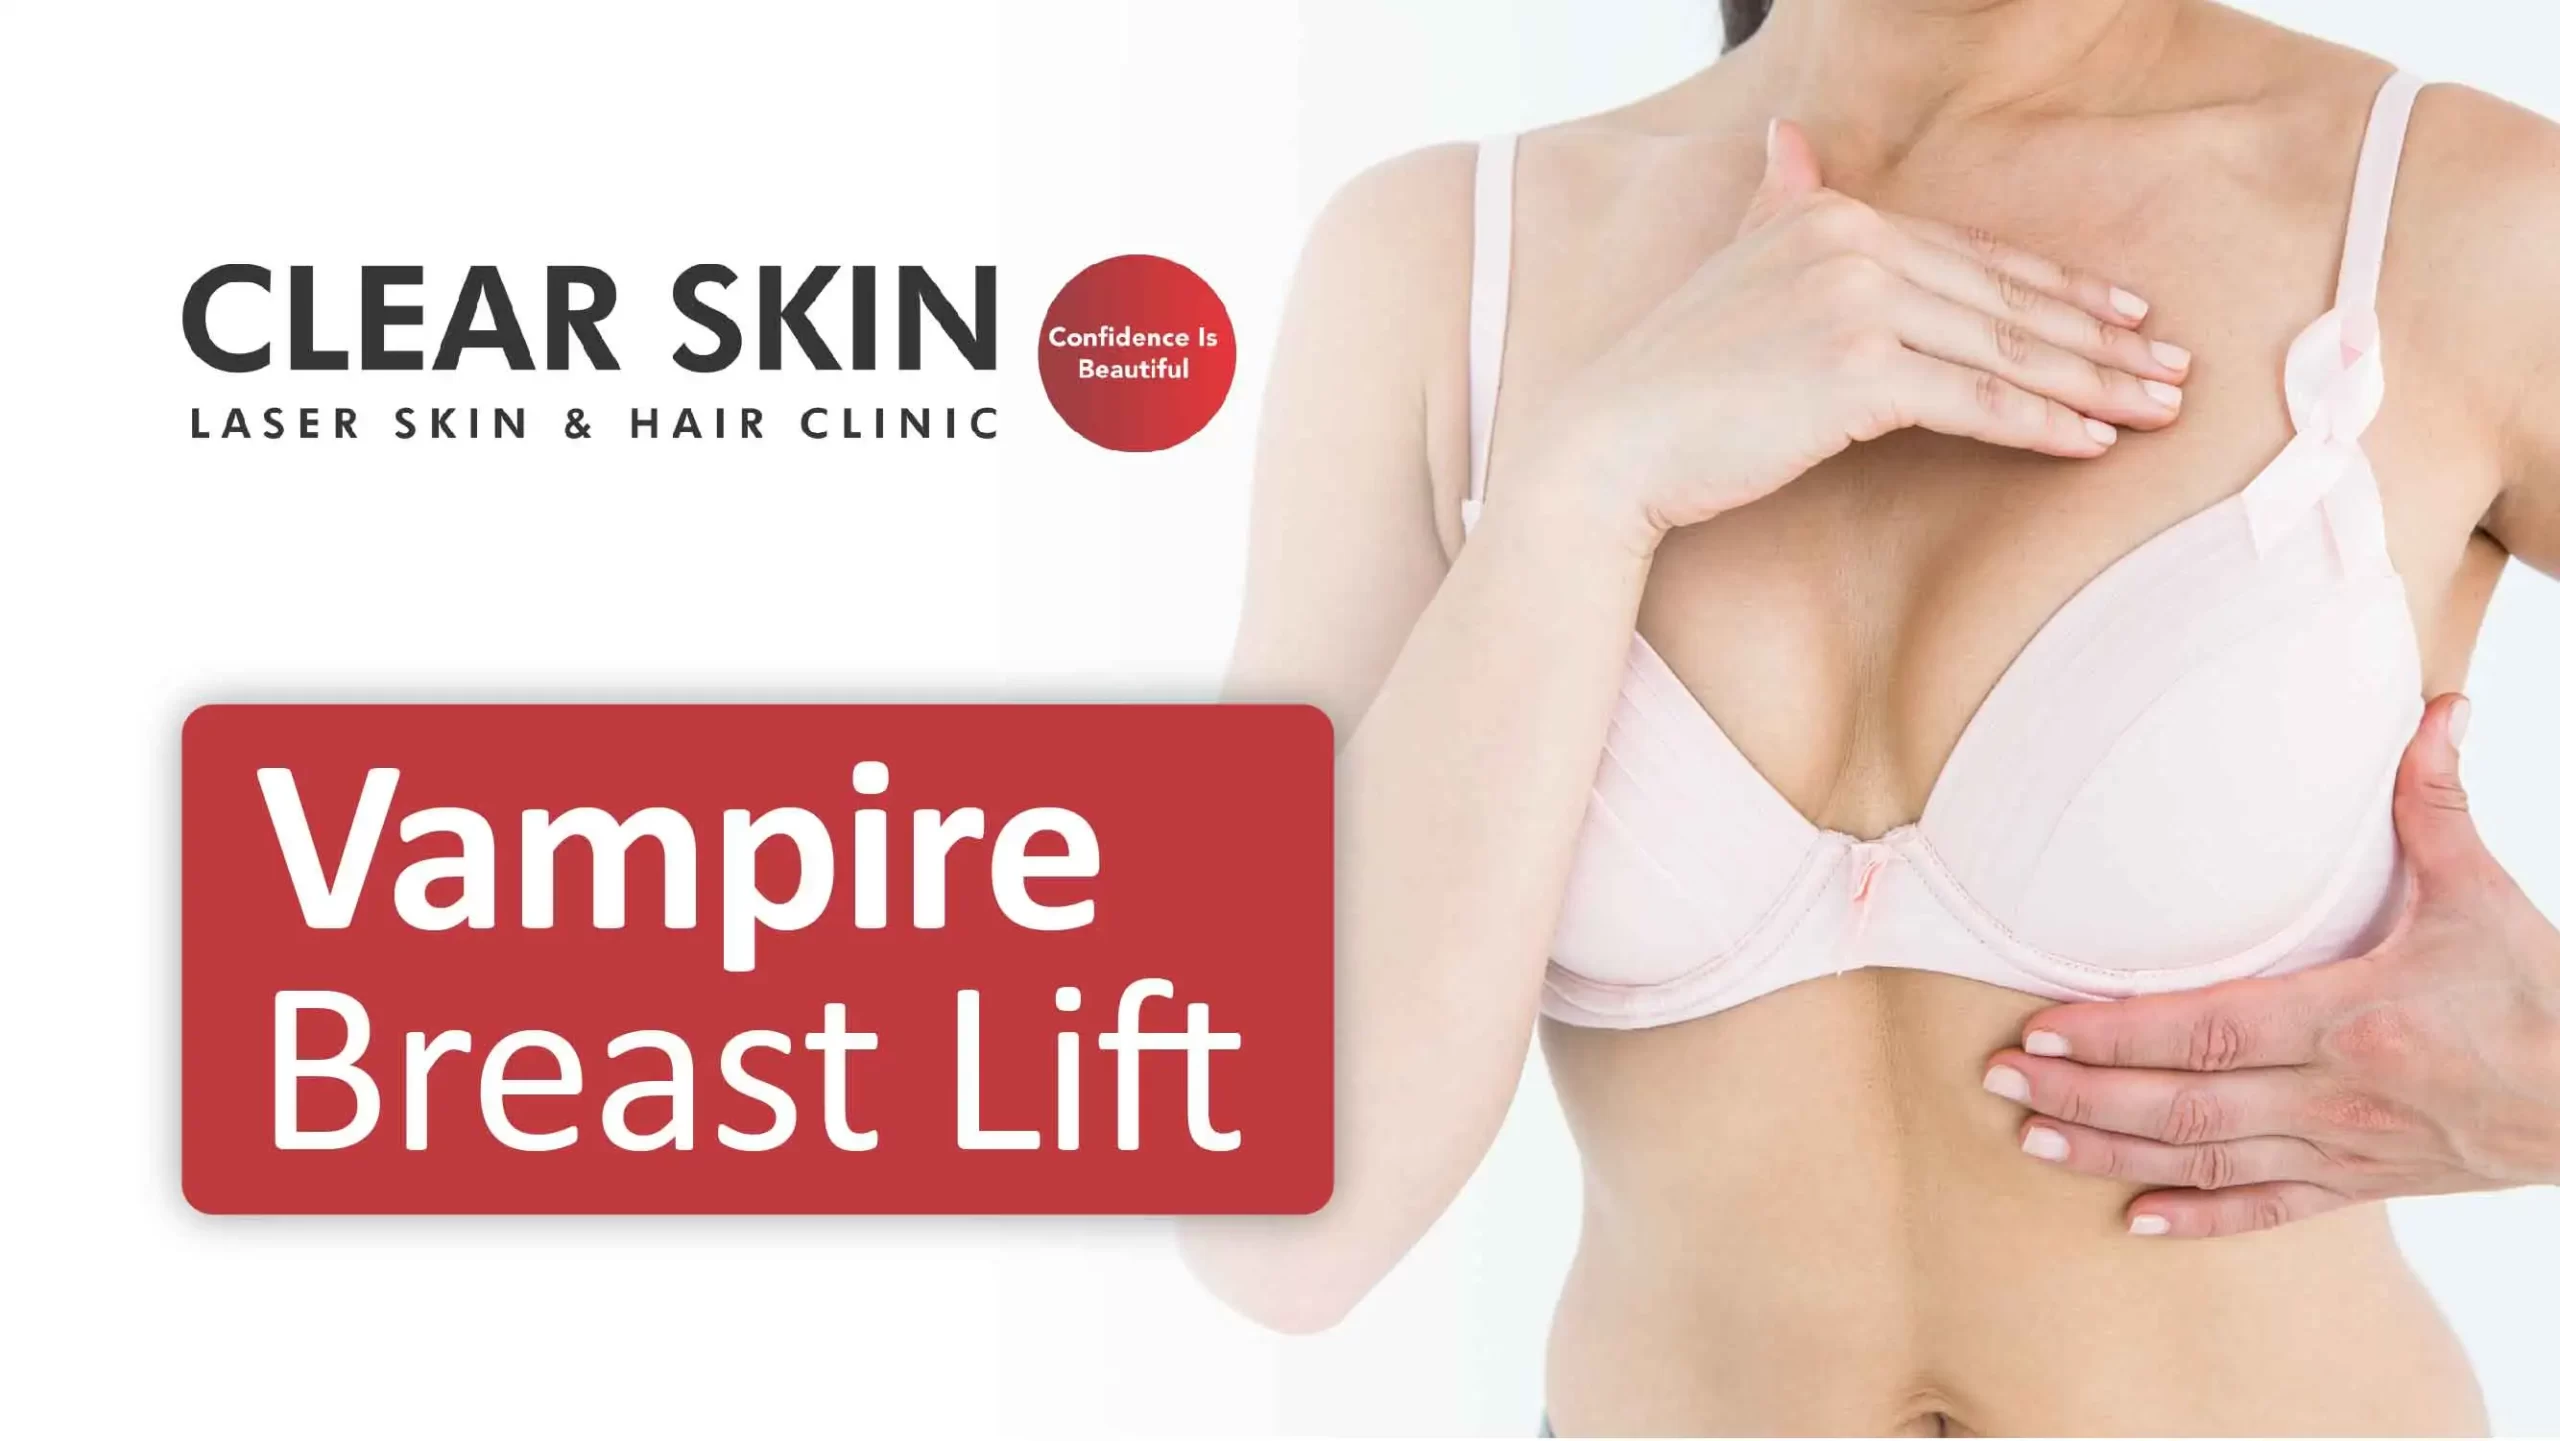 Vampire breast lift